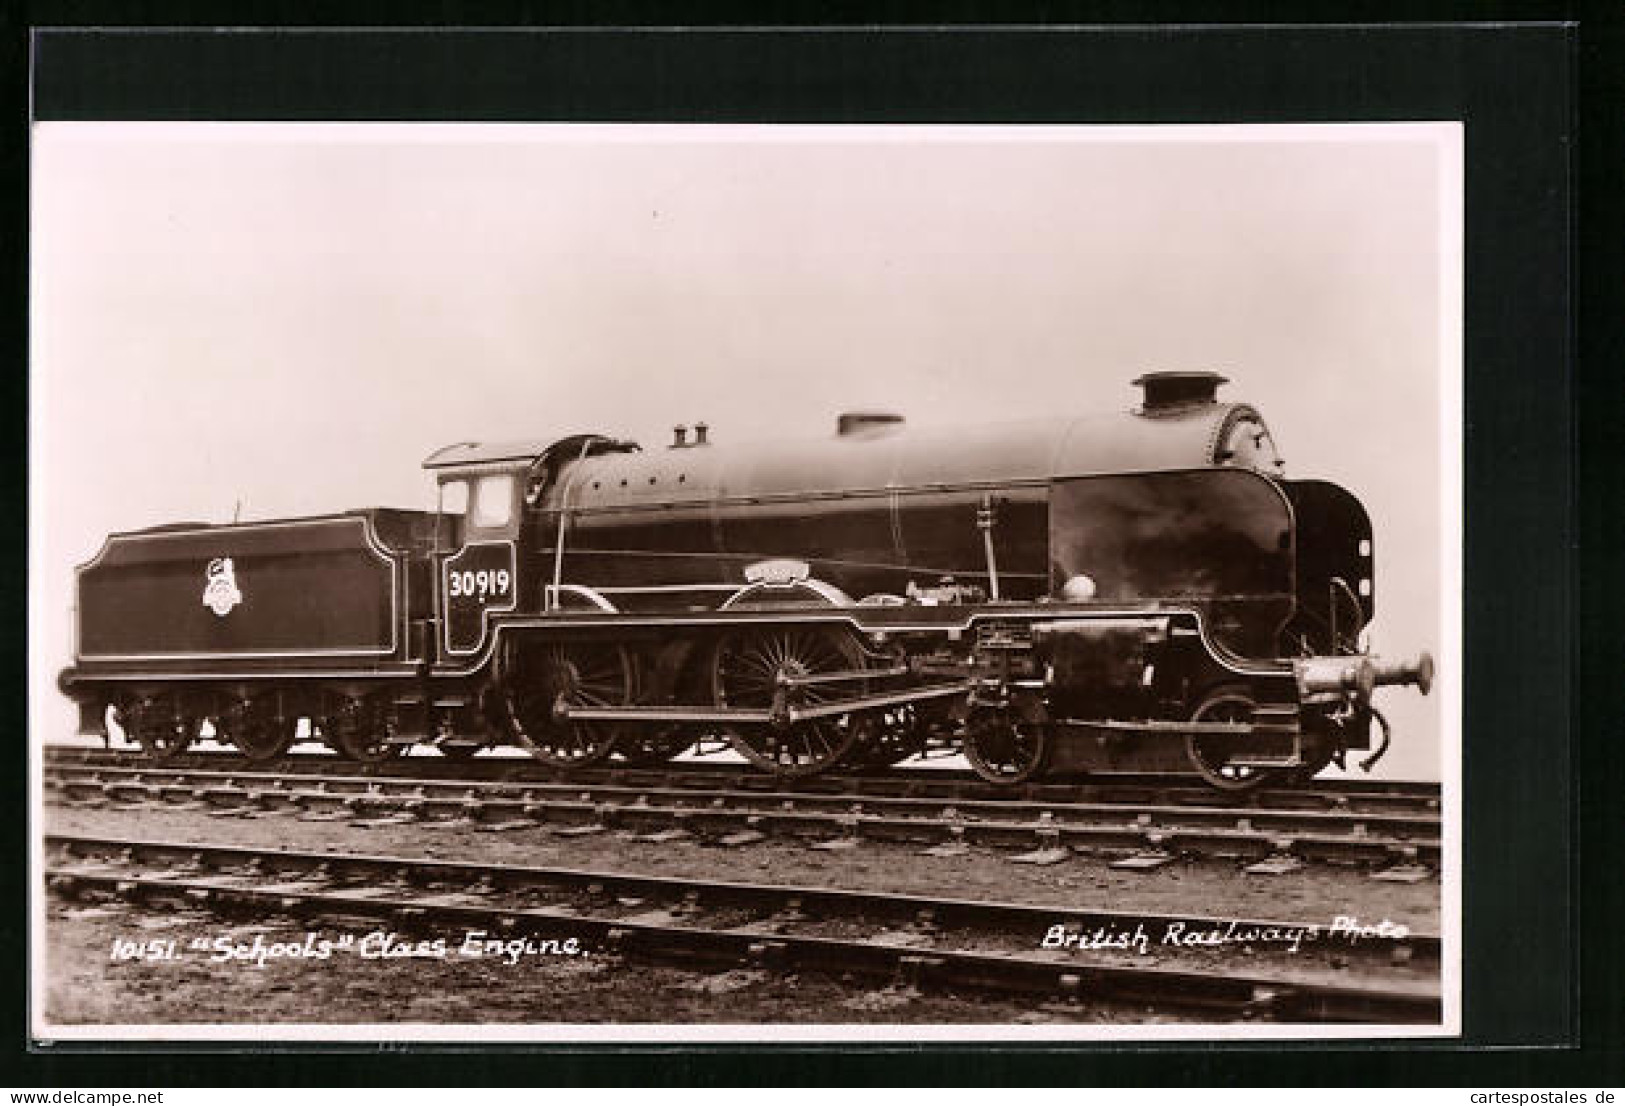 Pc Schools Class Engine, Englische Eisenbahn Nr. 30919  - Treinen